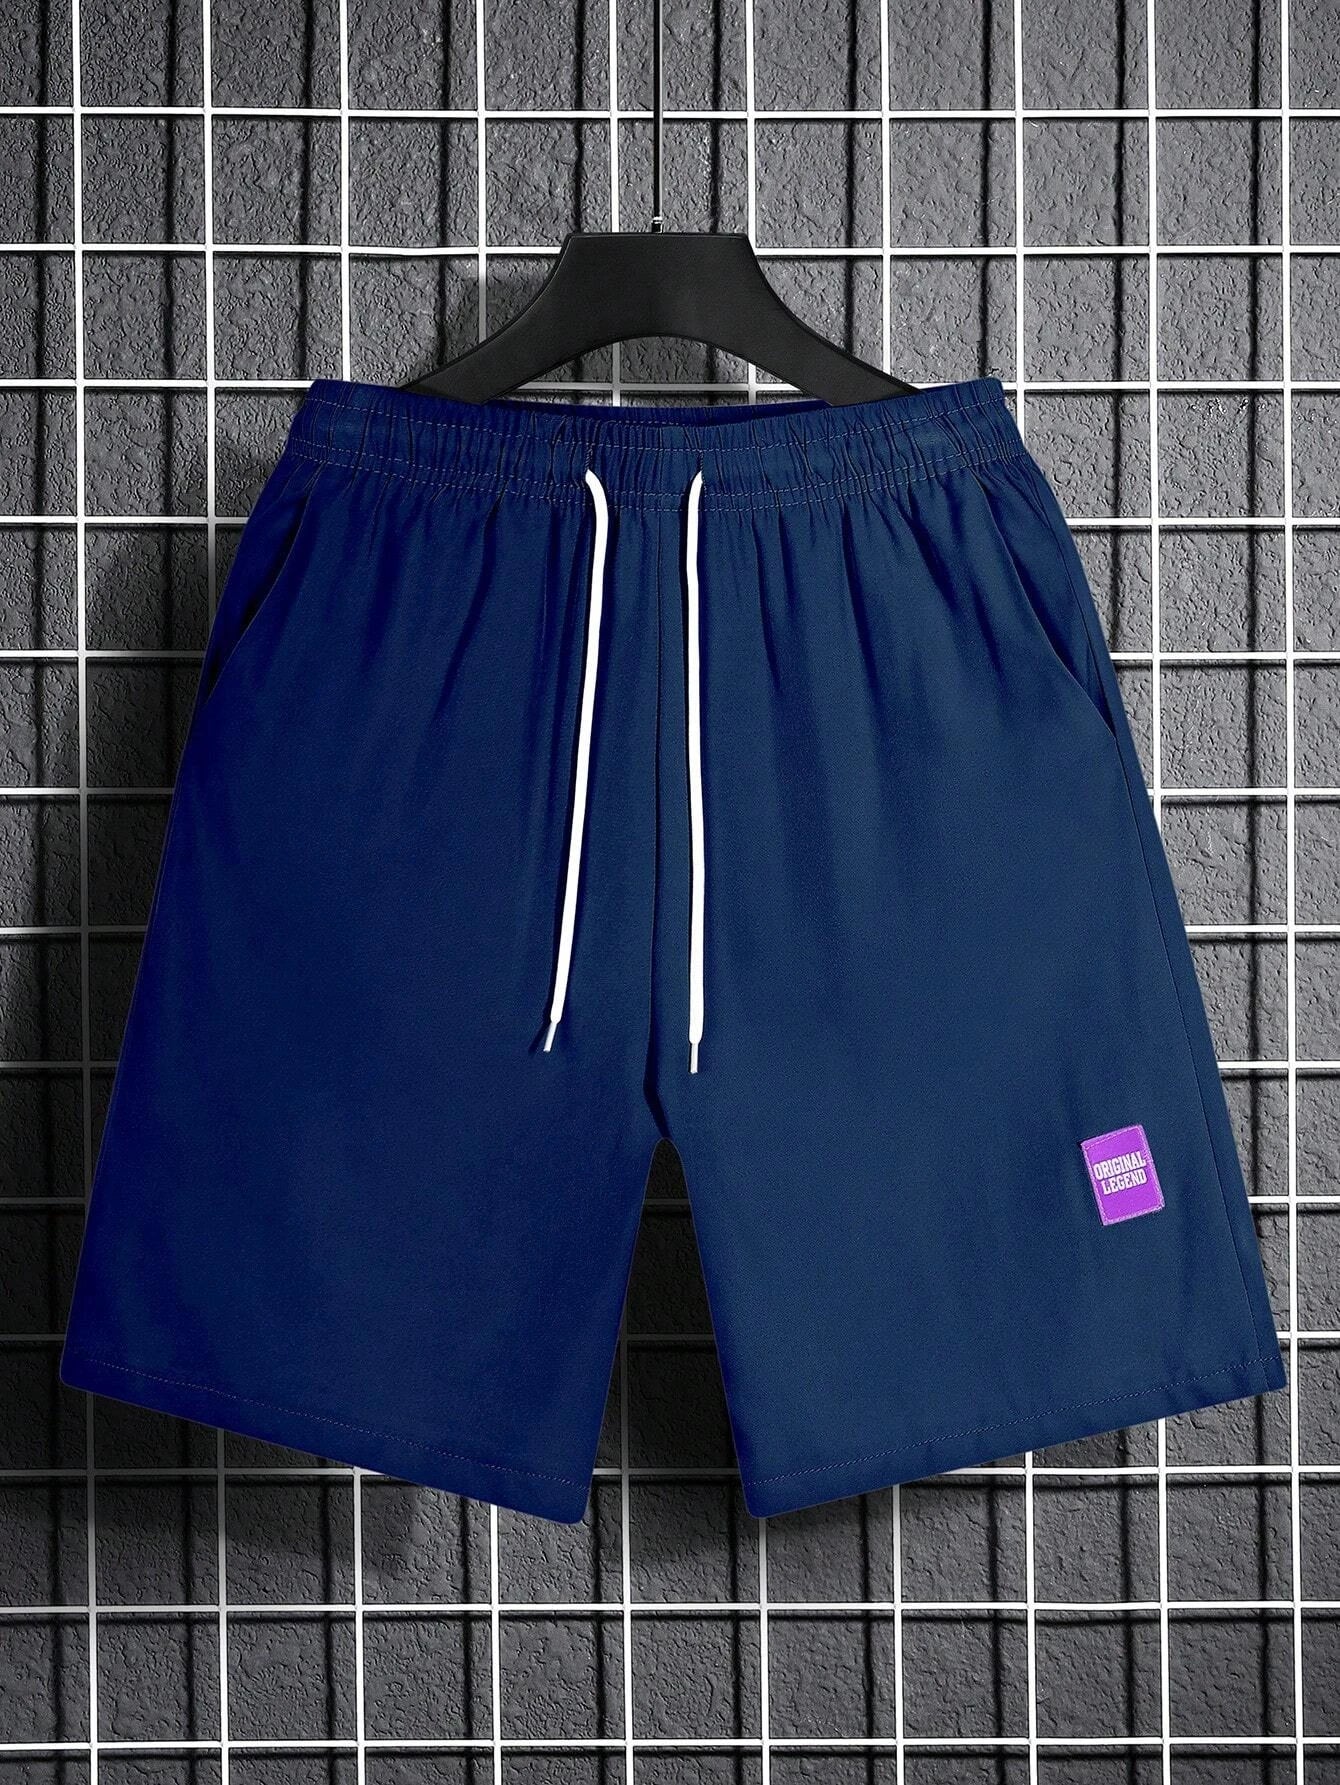 10247 a05-06 Shorts Holgados Para Hombre Con Detalles De Parches De Letras